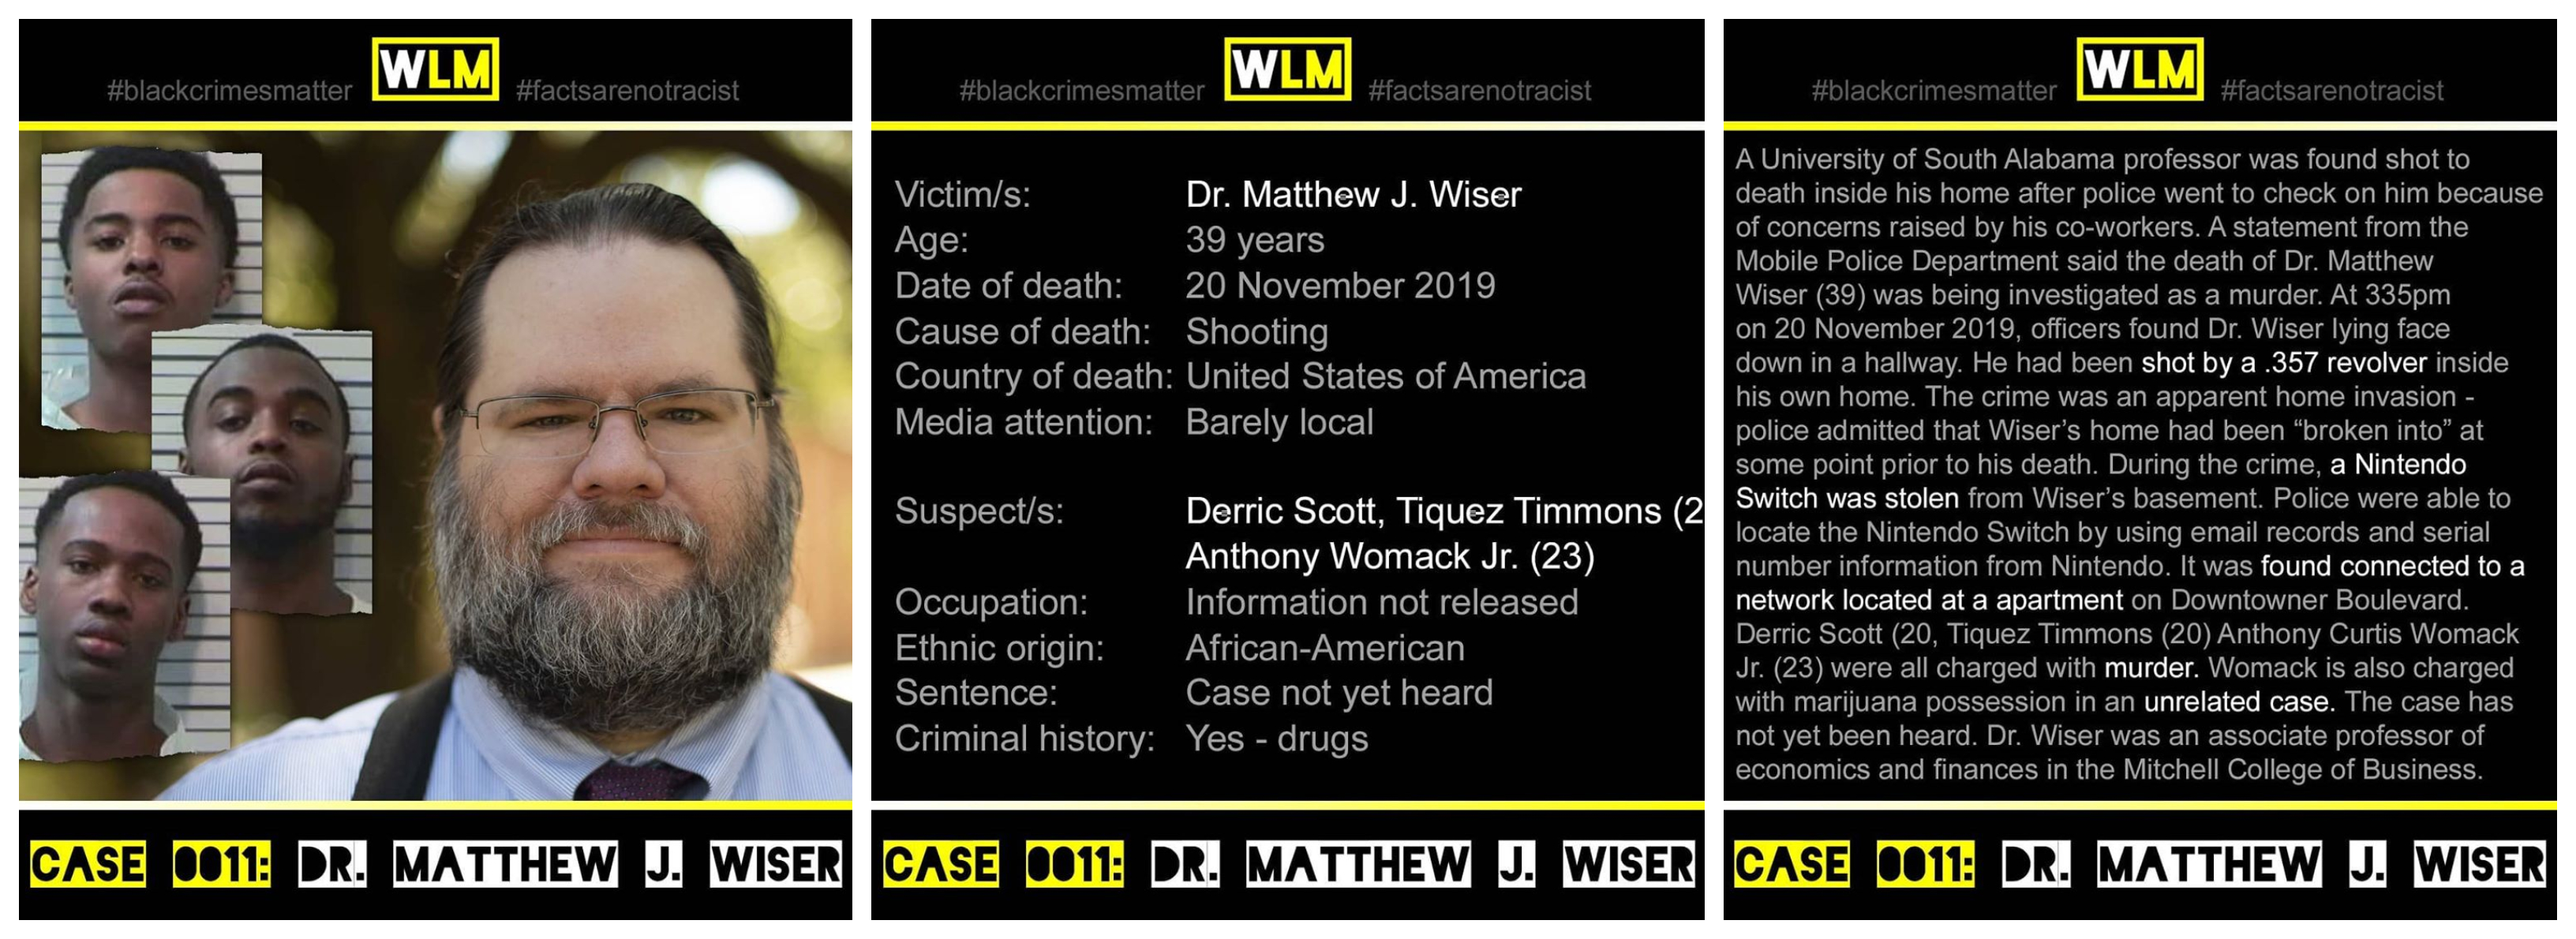 case-011-dr-matthew-wiser